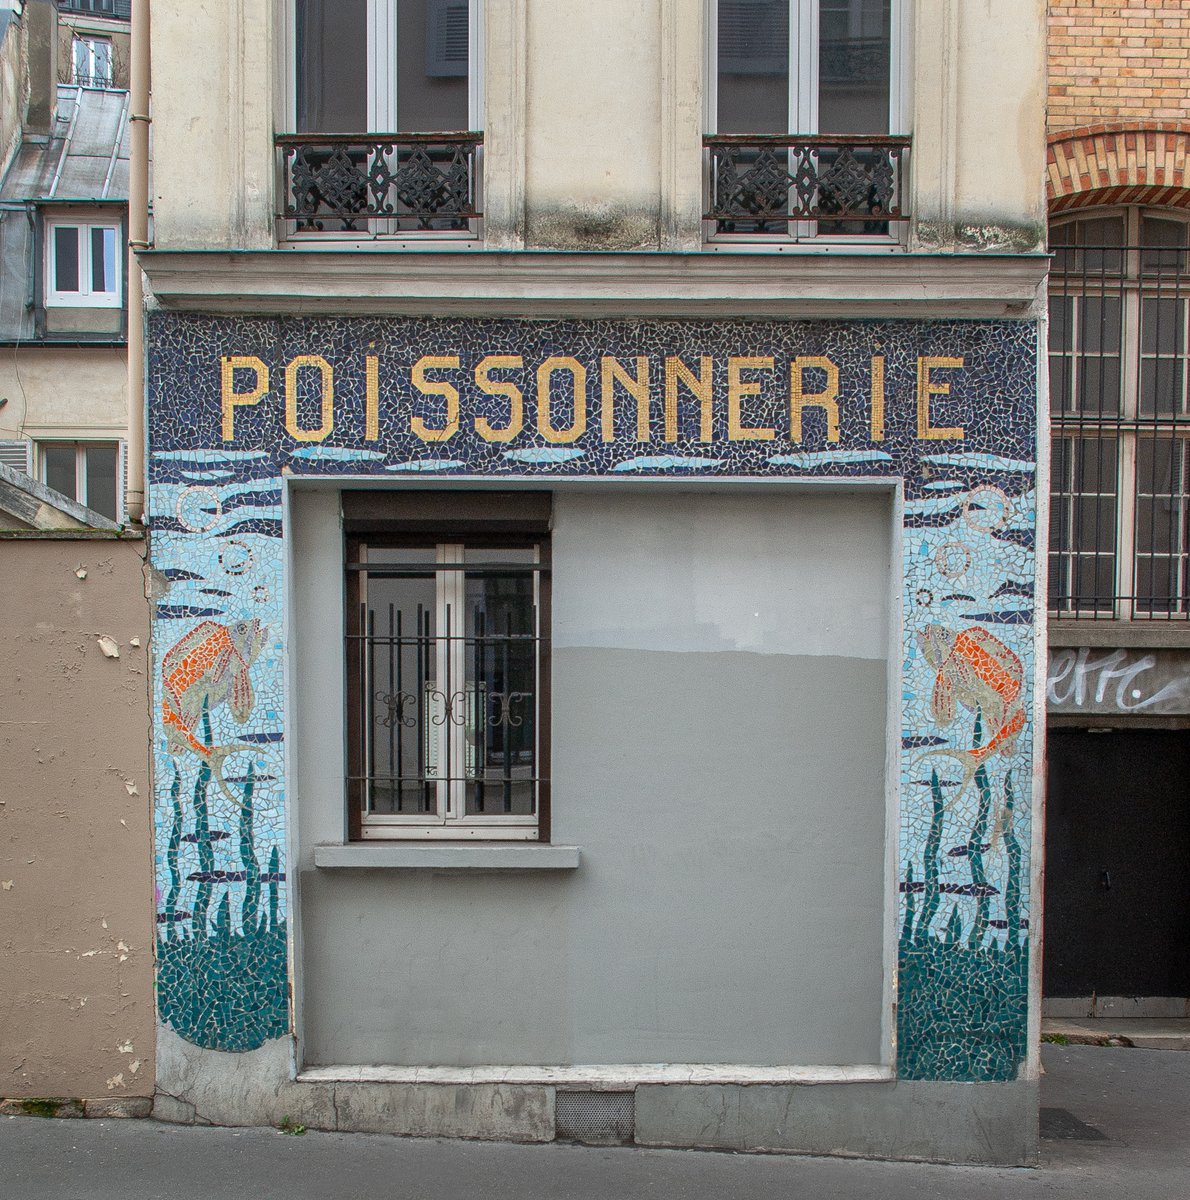 Poissonnerie... mosaïque et trace du passé à #Paris20.
Janvier 2016.

👉 pixdar.tumblr.com/post/739834591…